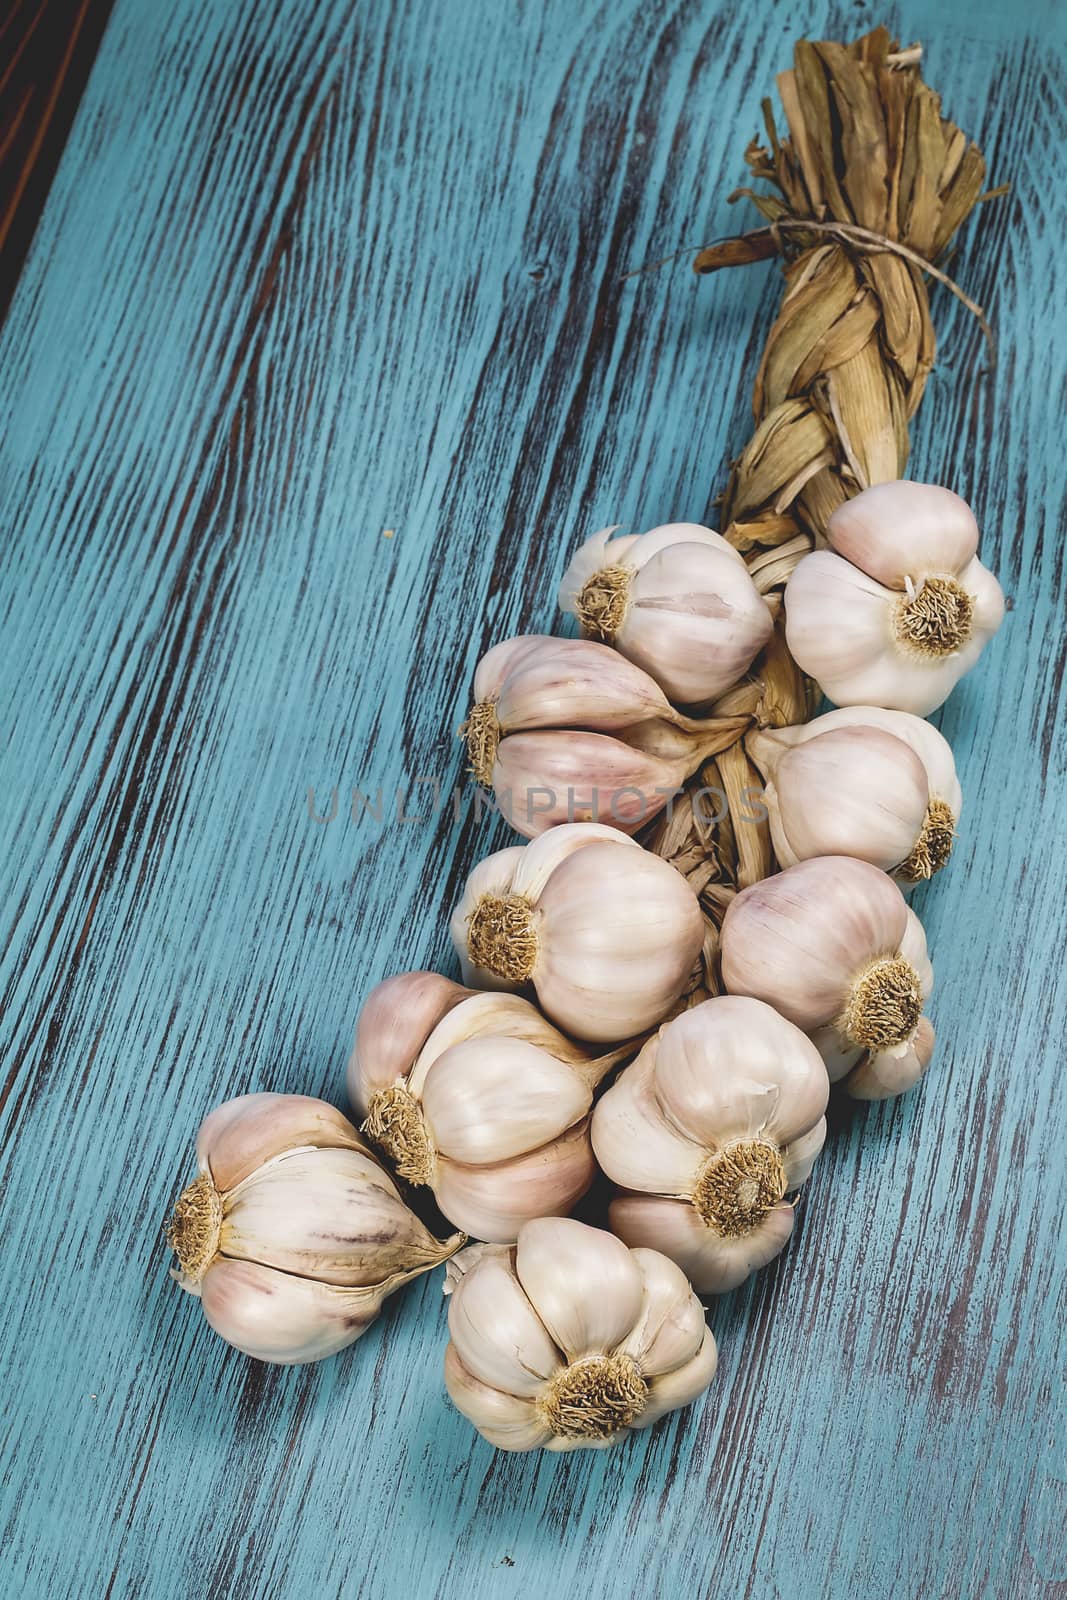 A string of garlic by Slast20